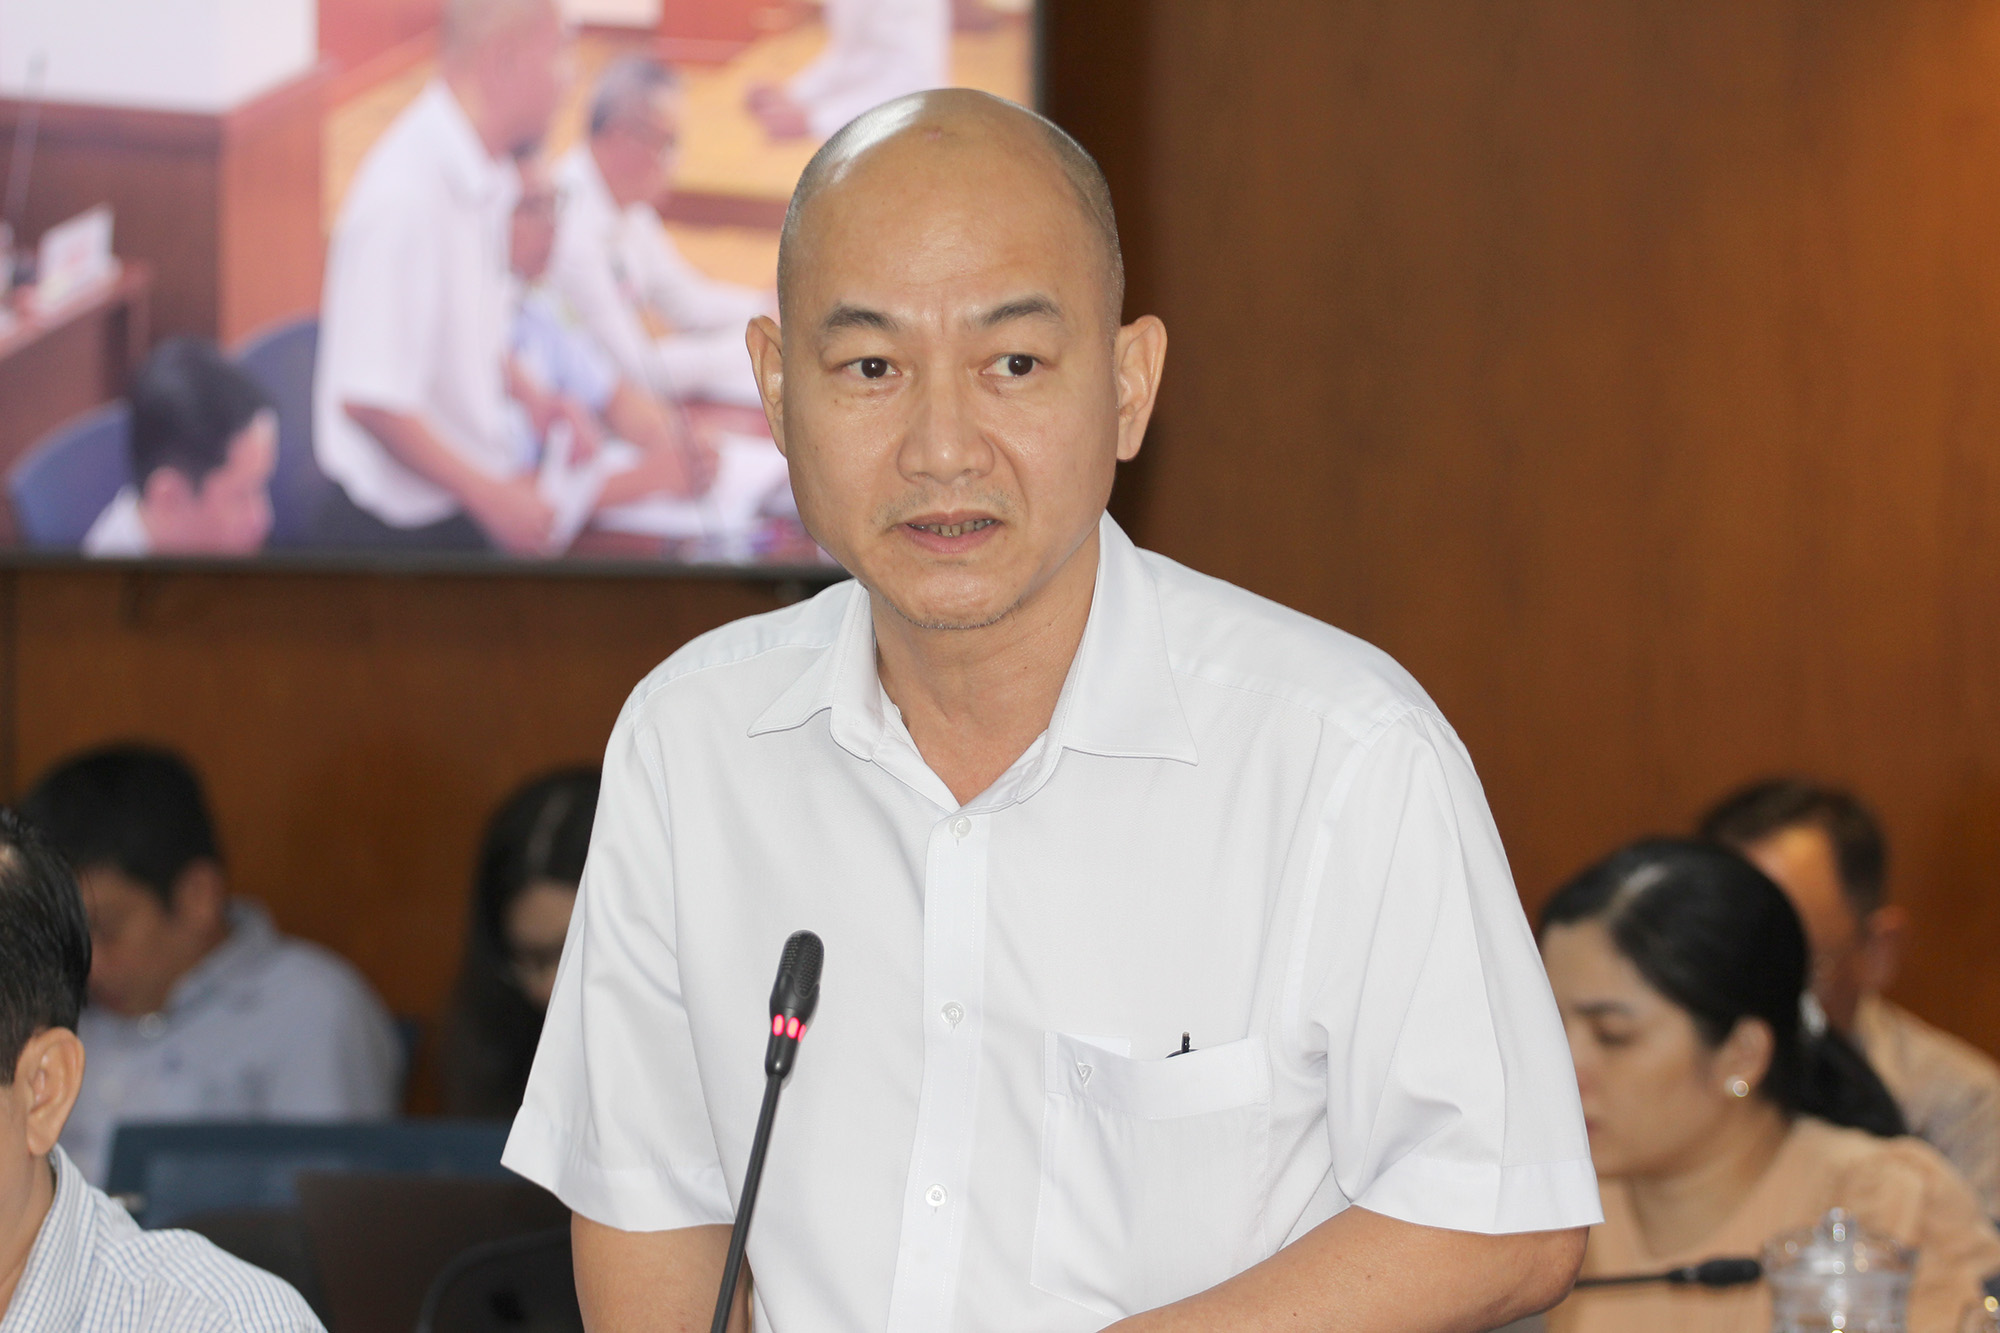 Đồng chí Nguyễn Nguyên Phương, Phó Giám đốc Sở Công thương TP. Hồ Chí Minh phát biểu tại buổi họp báo.